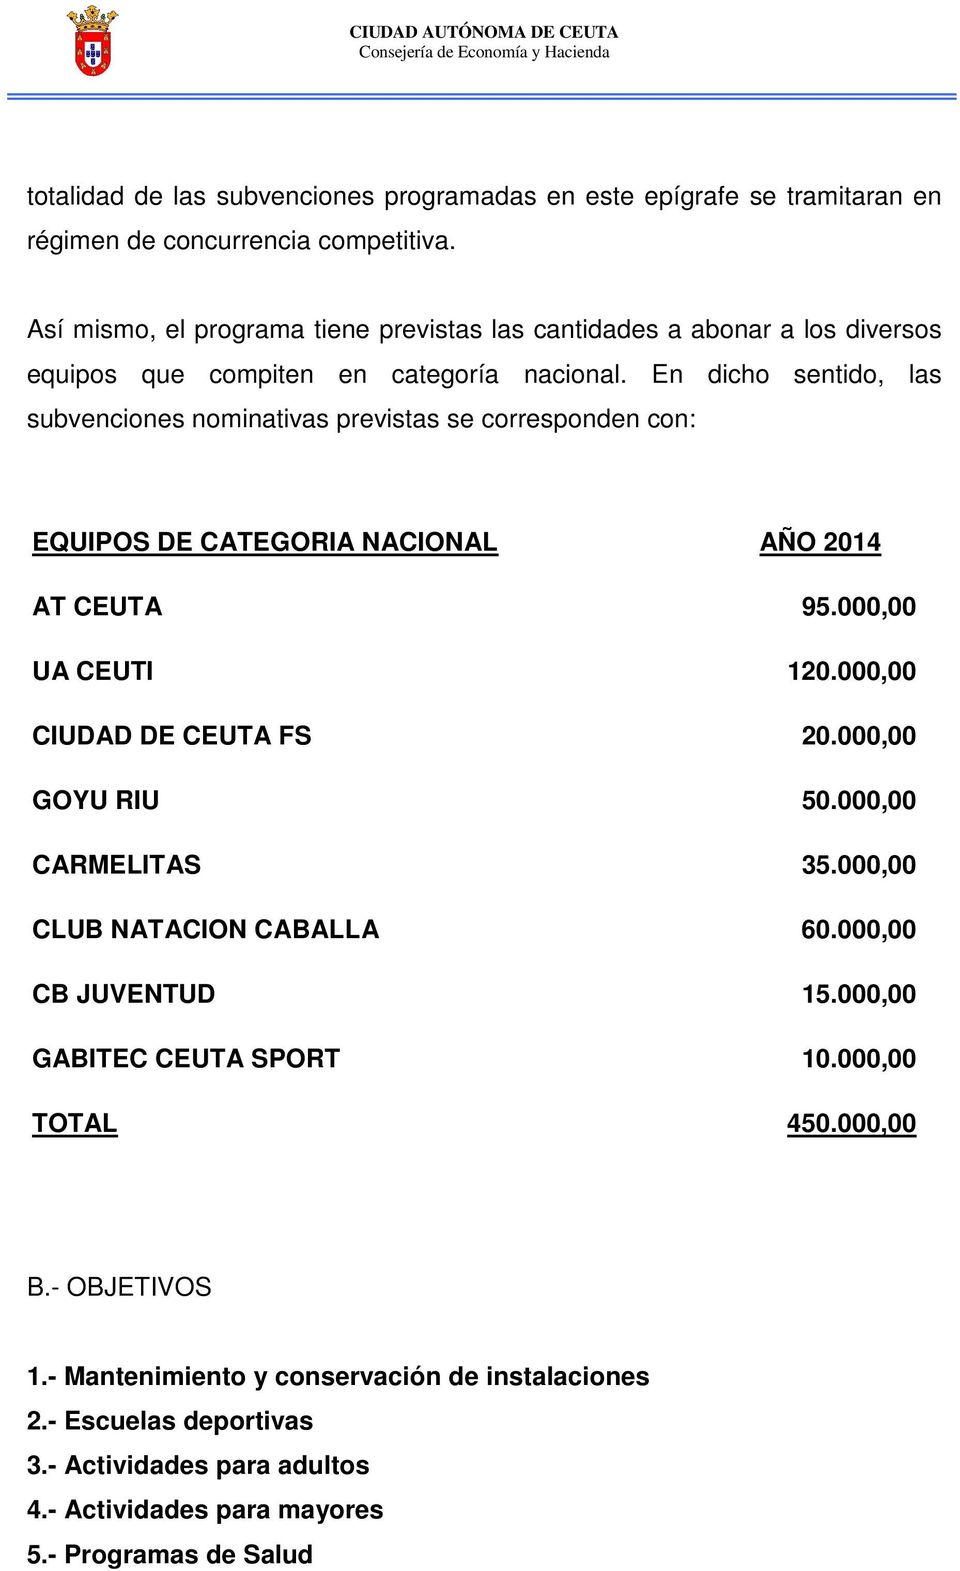 En dicho sentido, las subvenciones nominativas previstas se corresponden con: EQUIPOS DE CATEGORIA NACIONAL AÑO 2014 AT CEUTA 95.000,00 UA CEUTI 120.000,00 CIUDAD DE CEUTA FS 20.